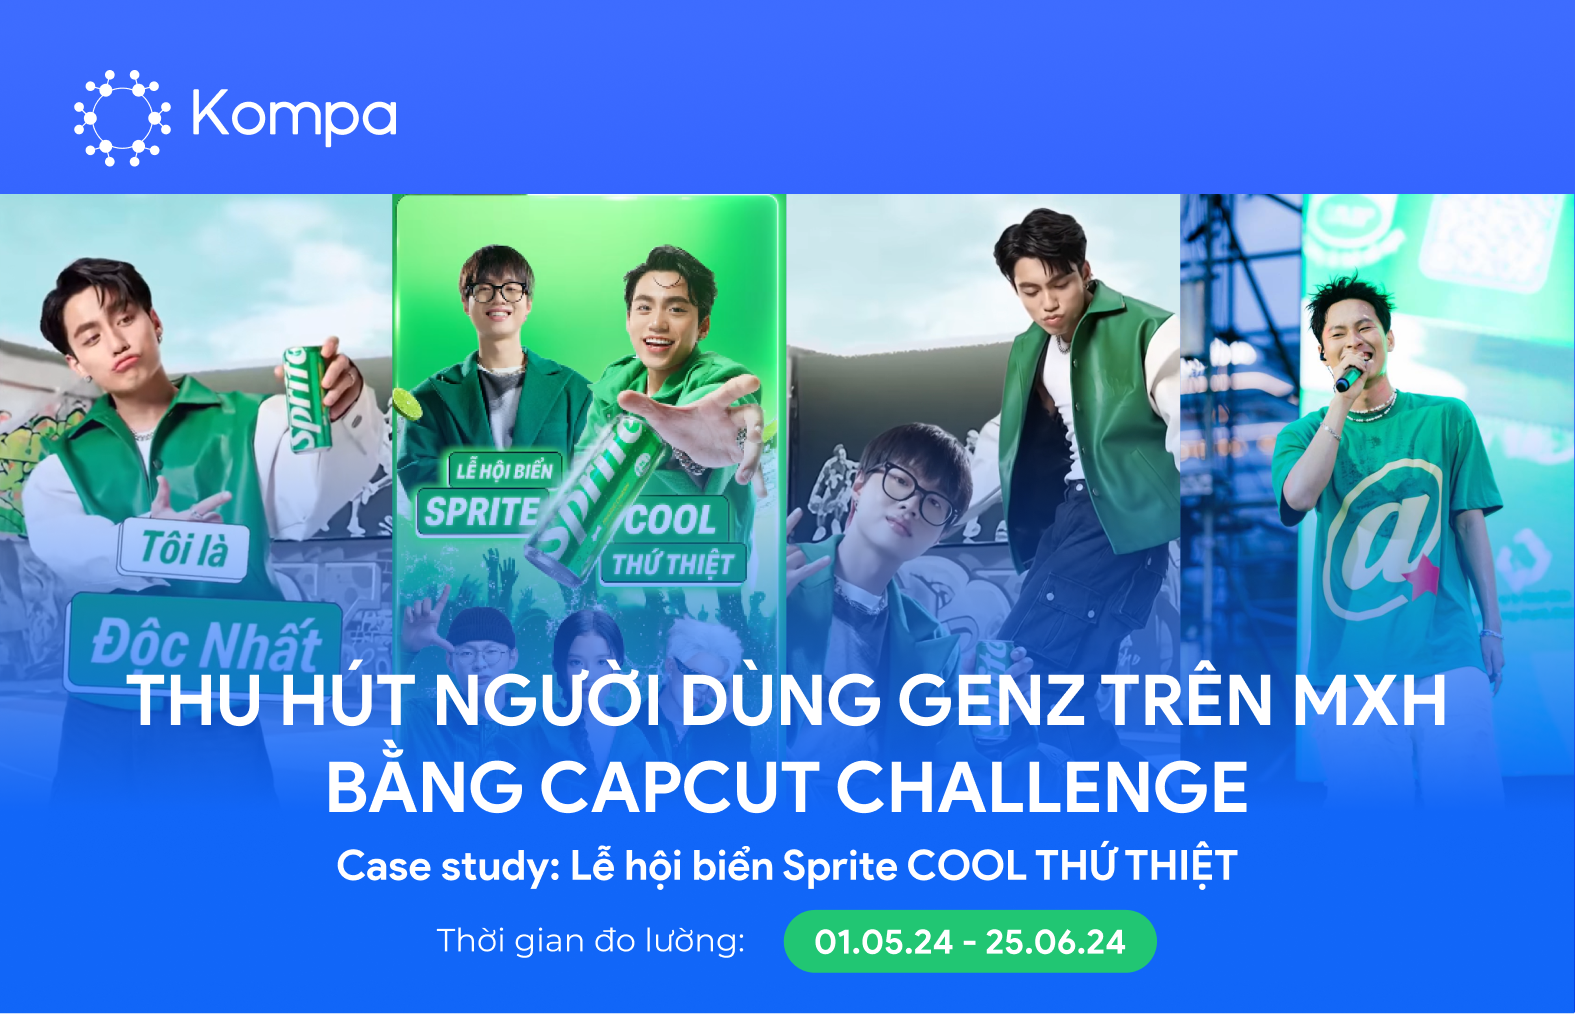 Case study: Lễ hội biển Sprite COOL THỨ THIỆT – Thu hút người dùng GenZ trên MXH bằng Capcut Challenge